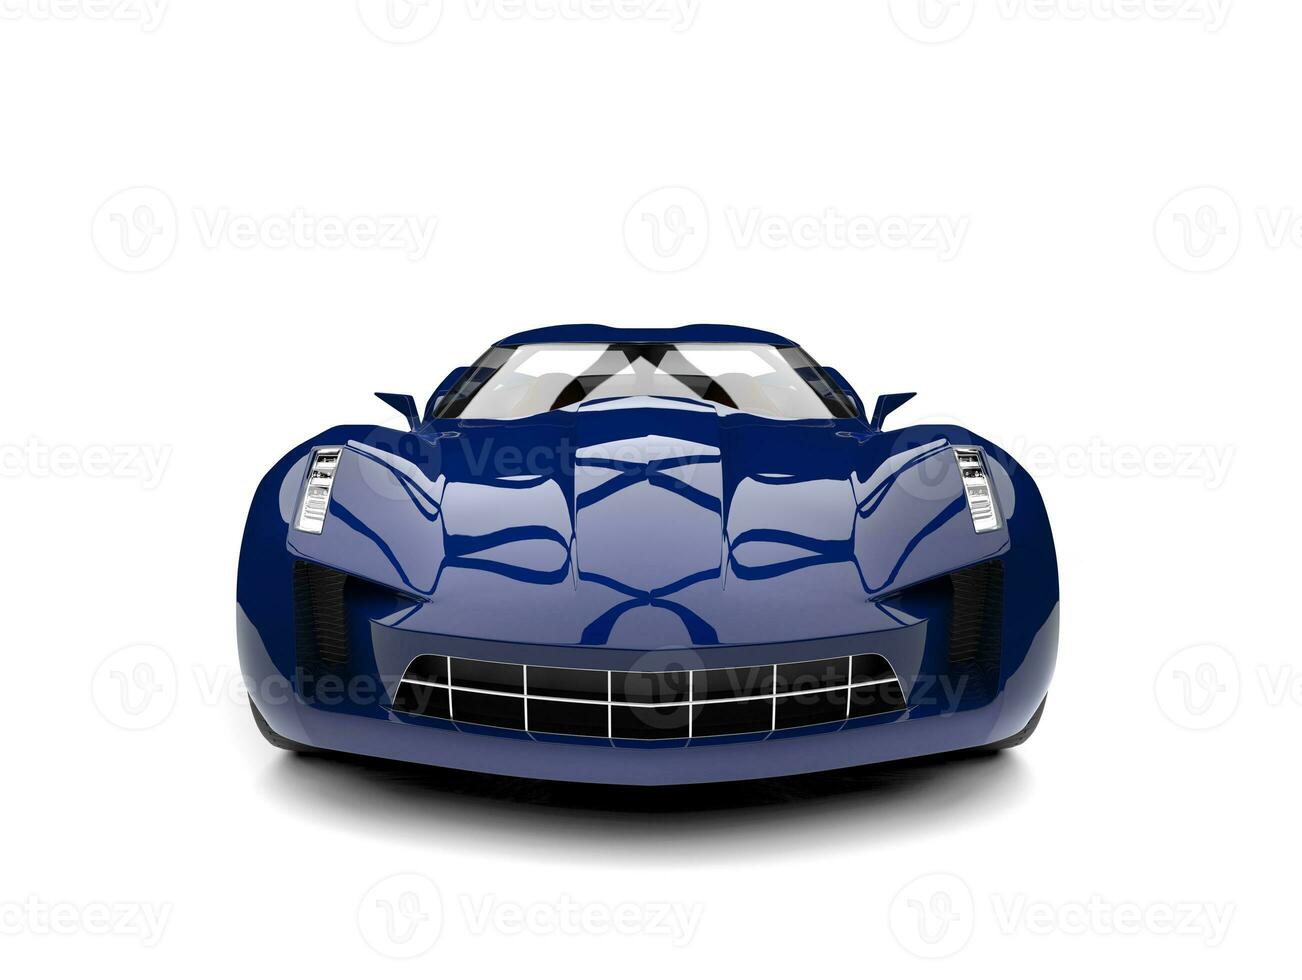 oscuro azul moderno Deportes concepto coche - frente ver foto